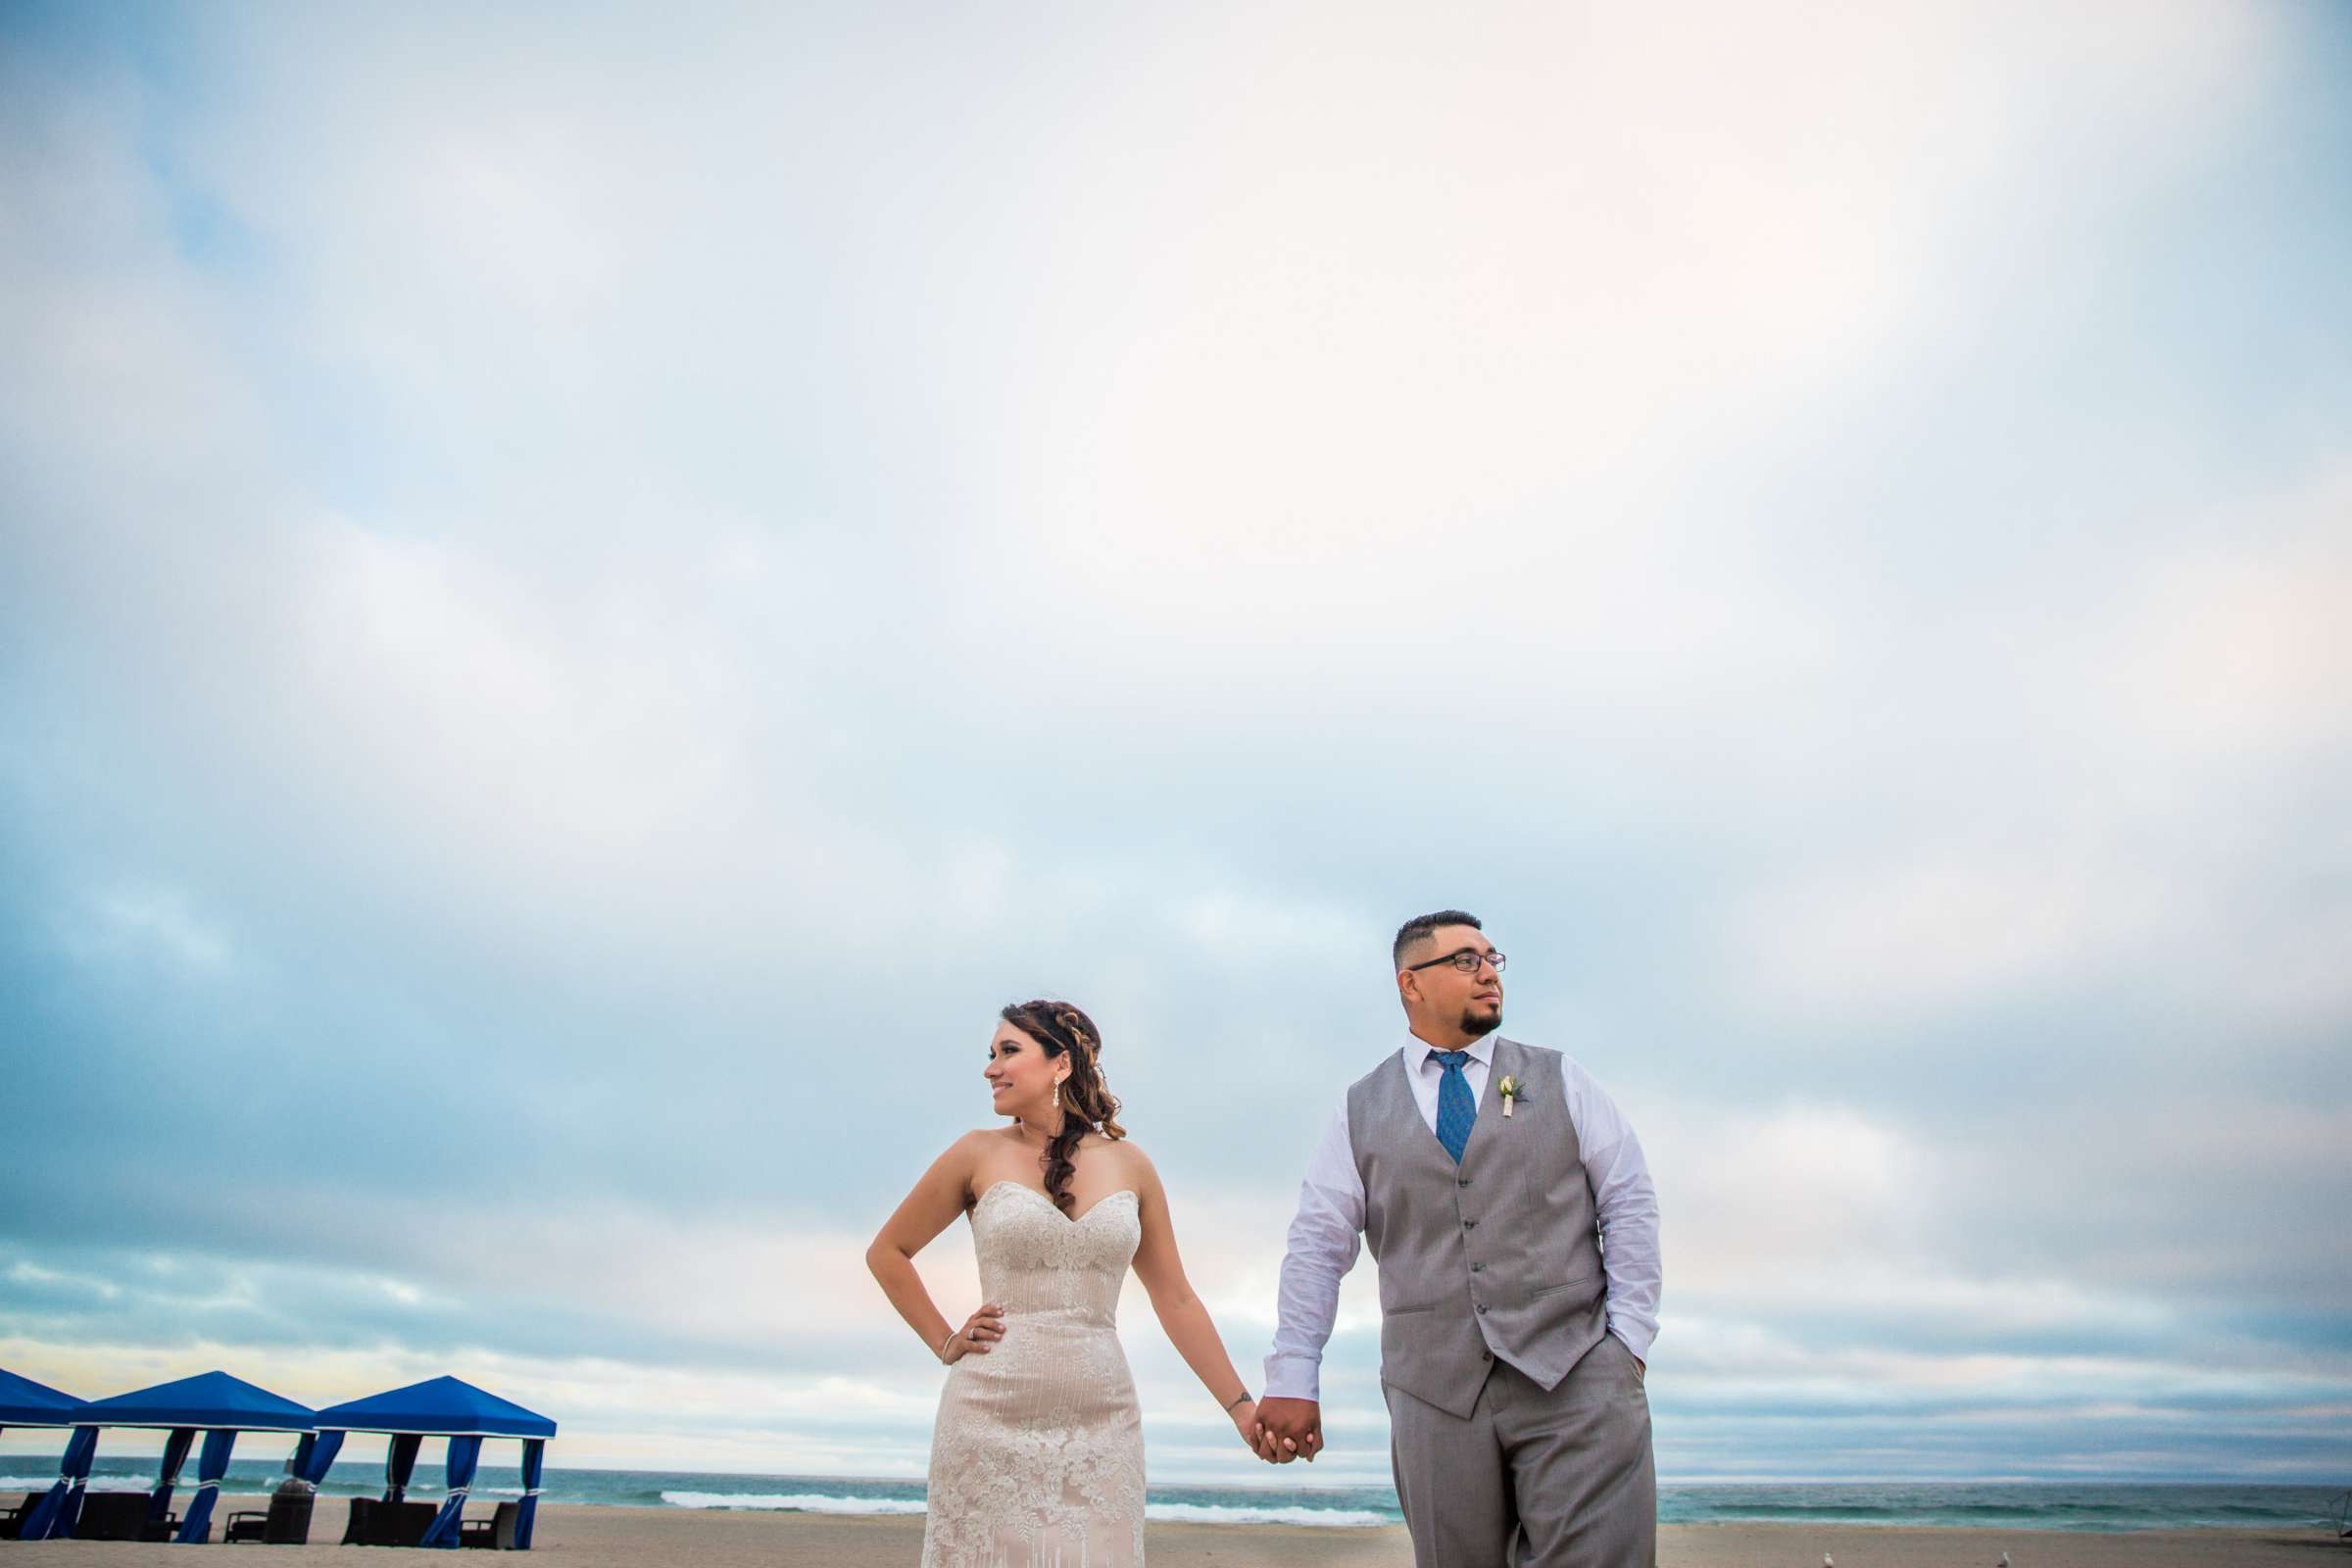 Del Mar Beach Resort Wedding coordinated by La Casa Del Mar, Alisa and Carlos Wedding Photo #380859 by True Photography